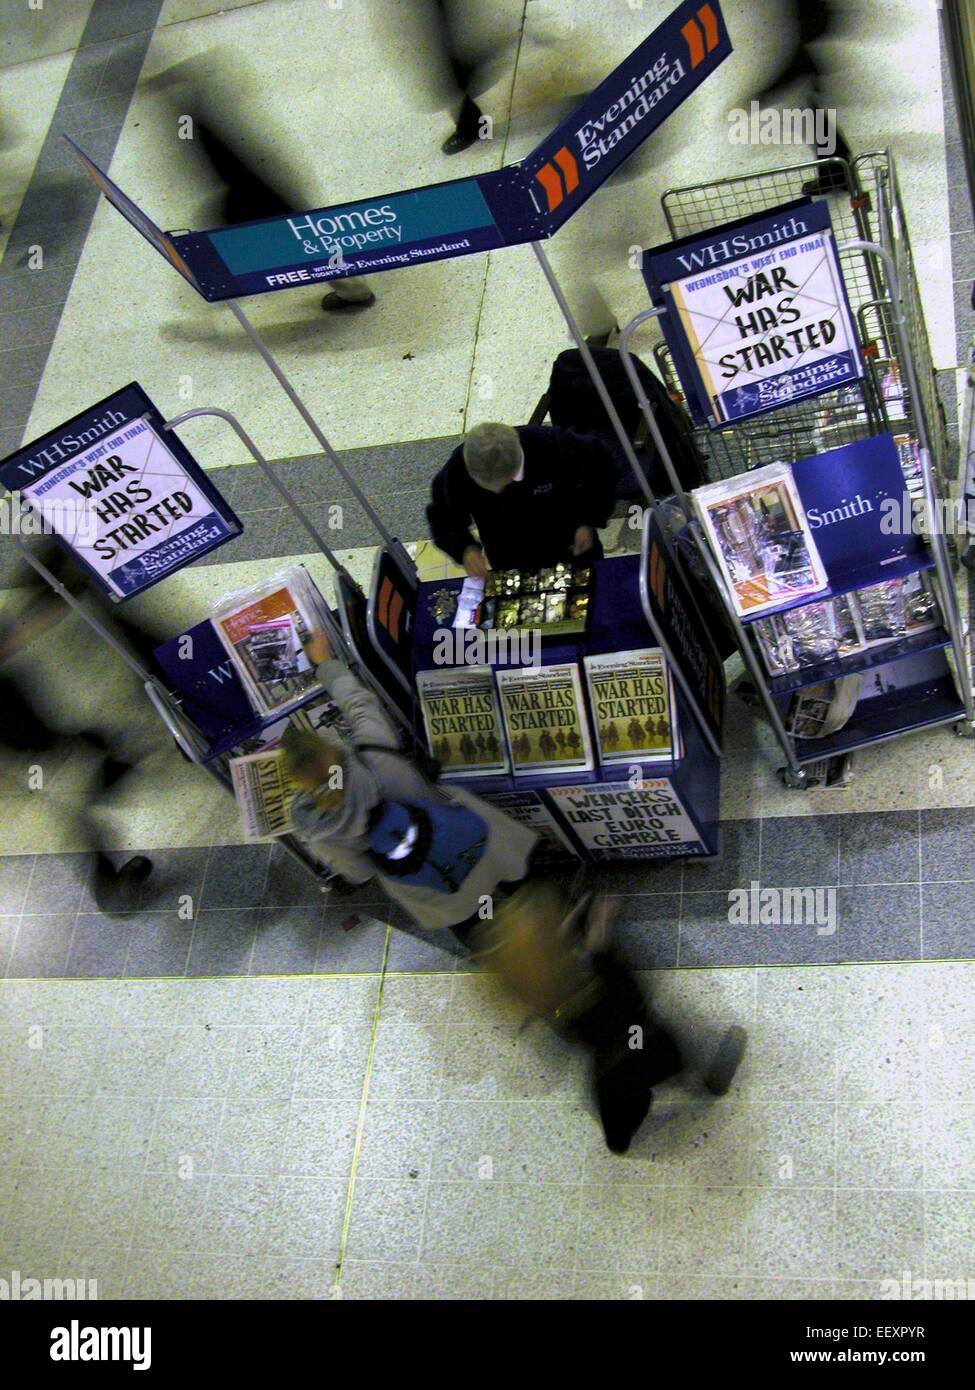 La guerre a commencé Evening Standard news vendeur afficher annonce du début de la deuxième guerre du Golfe en Irak contre Saddam Hussein Banque D'Images